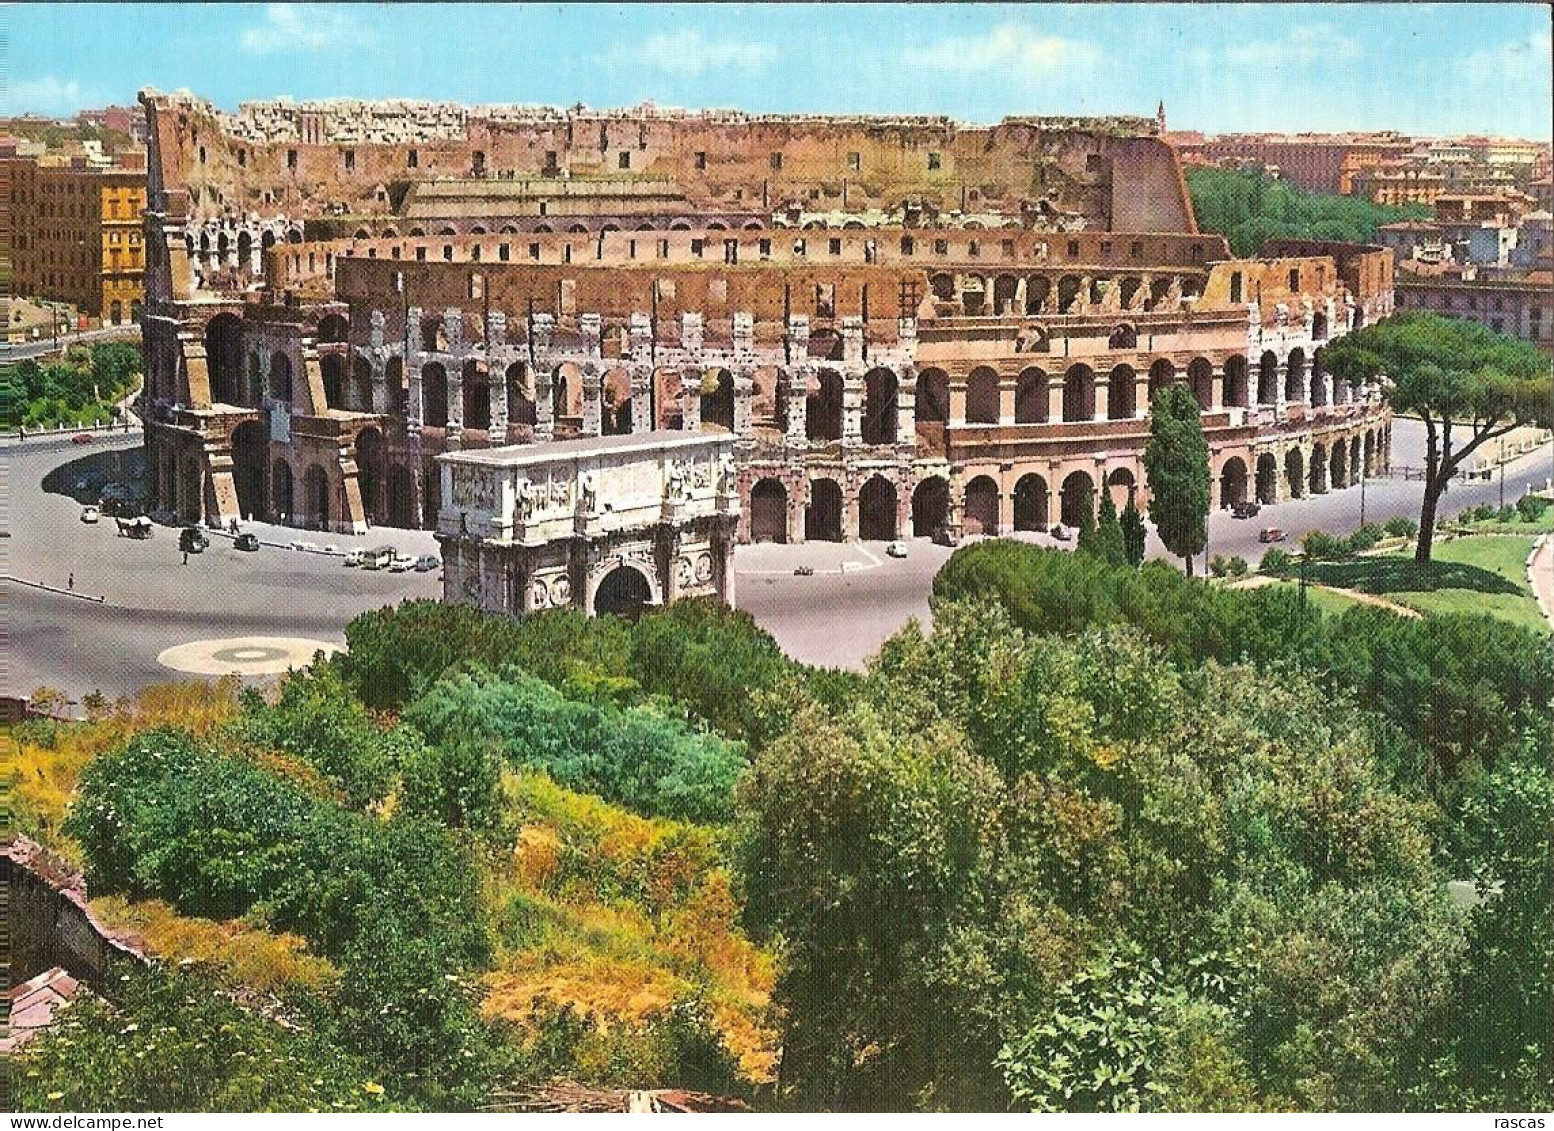 CPM - ITALIE - ROMA - ROME - LE COLISEE ET L'ARC DE CONSTANTIN - COLOSSEO E ARCO DI COSTANTINO - Colosseum